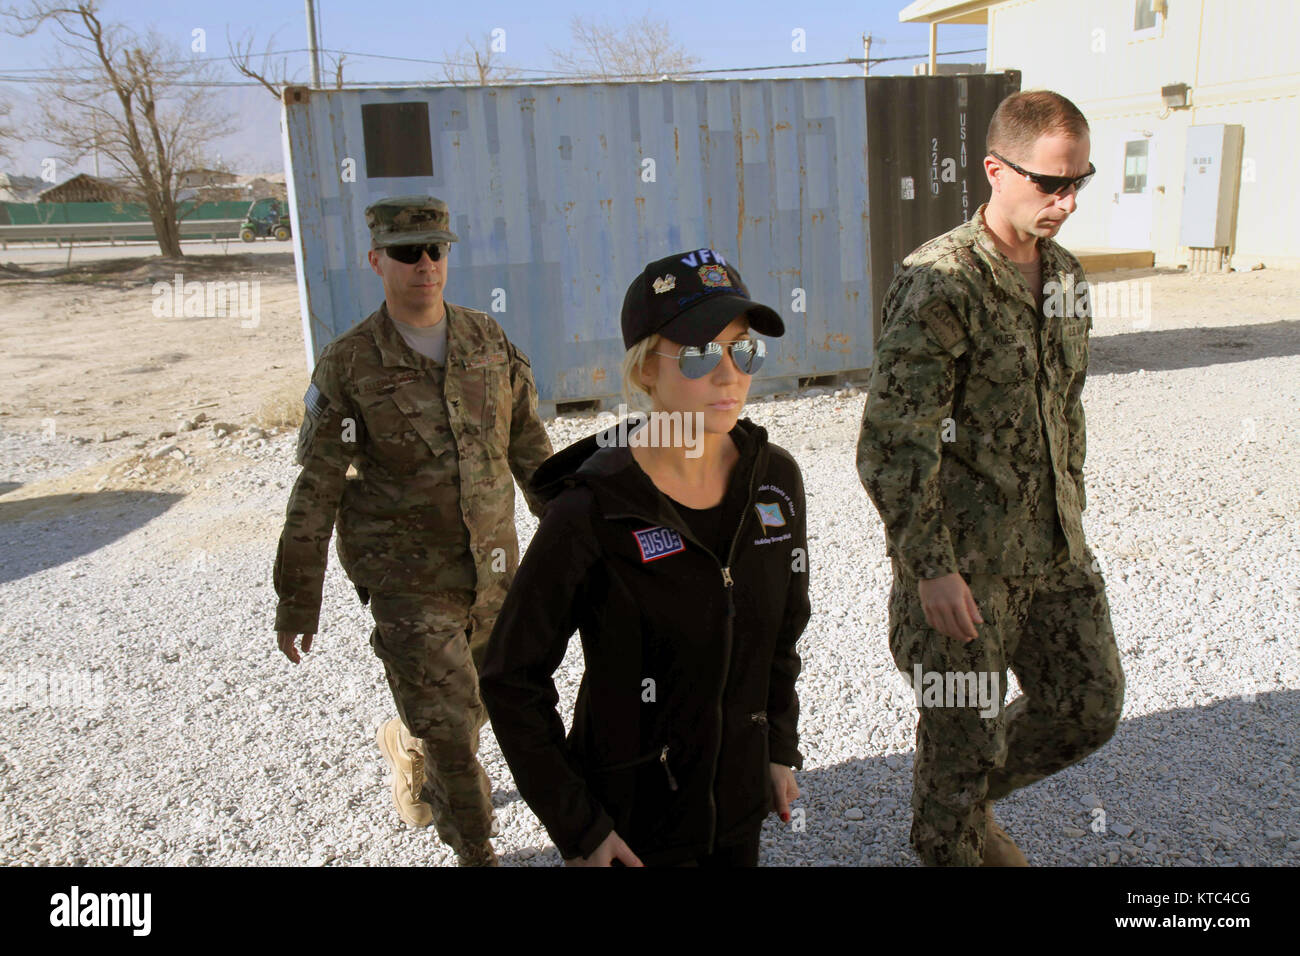 Country Music Artist Kellie Pickler Touren der Airbase während der USO Urlaub Truppenbesuch in Bagram Air Field Dezember 9, in Bagram, Afghanistan 2014. Stockfoto